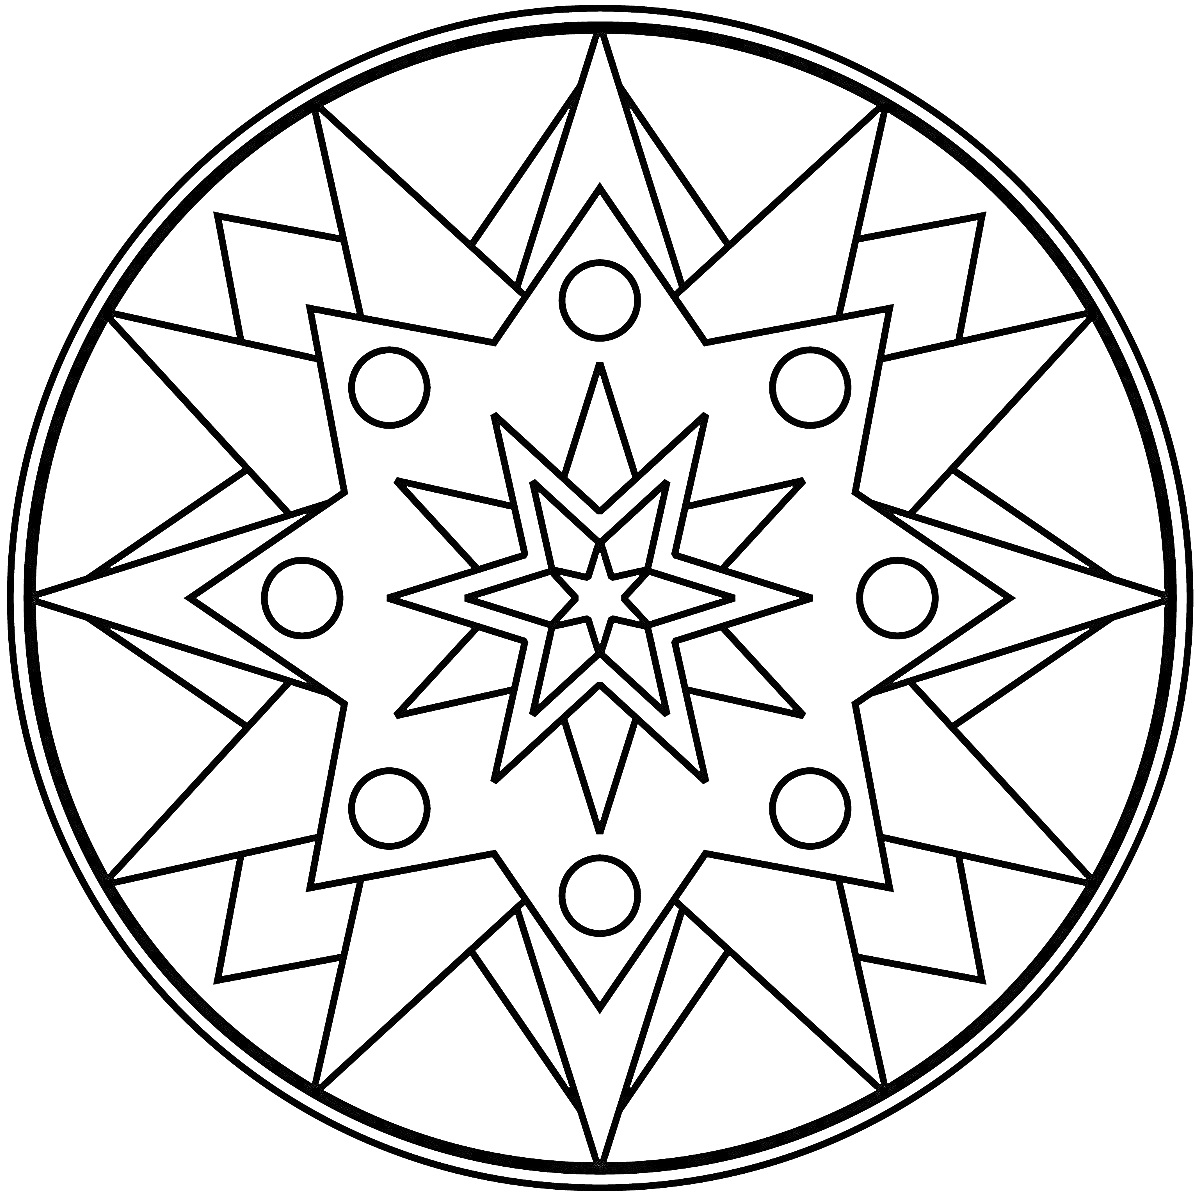 Раскраска Мандала с восьмиконечной звездой, окруженной треугольниками и кружками